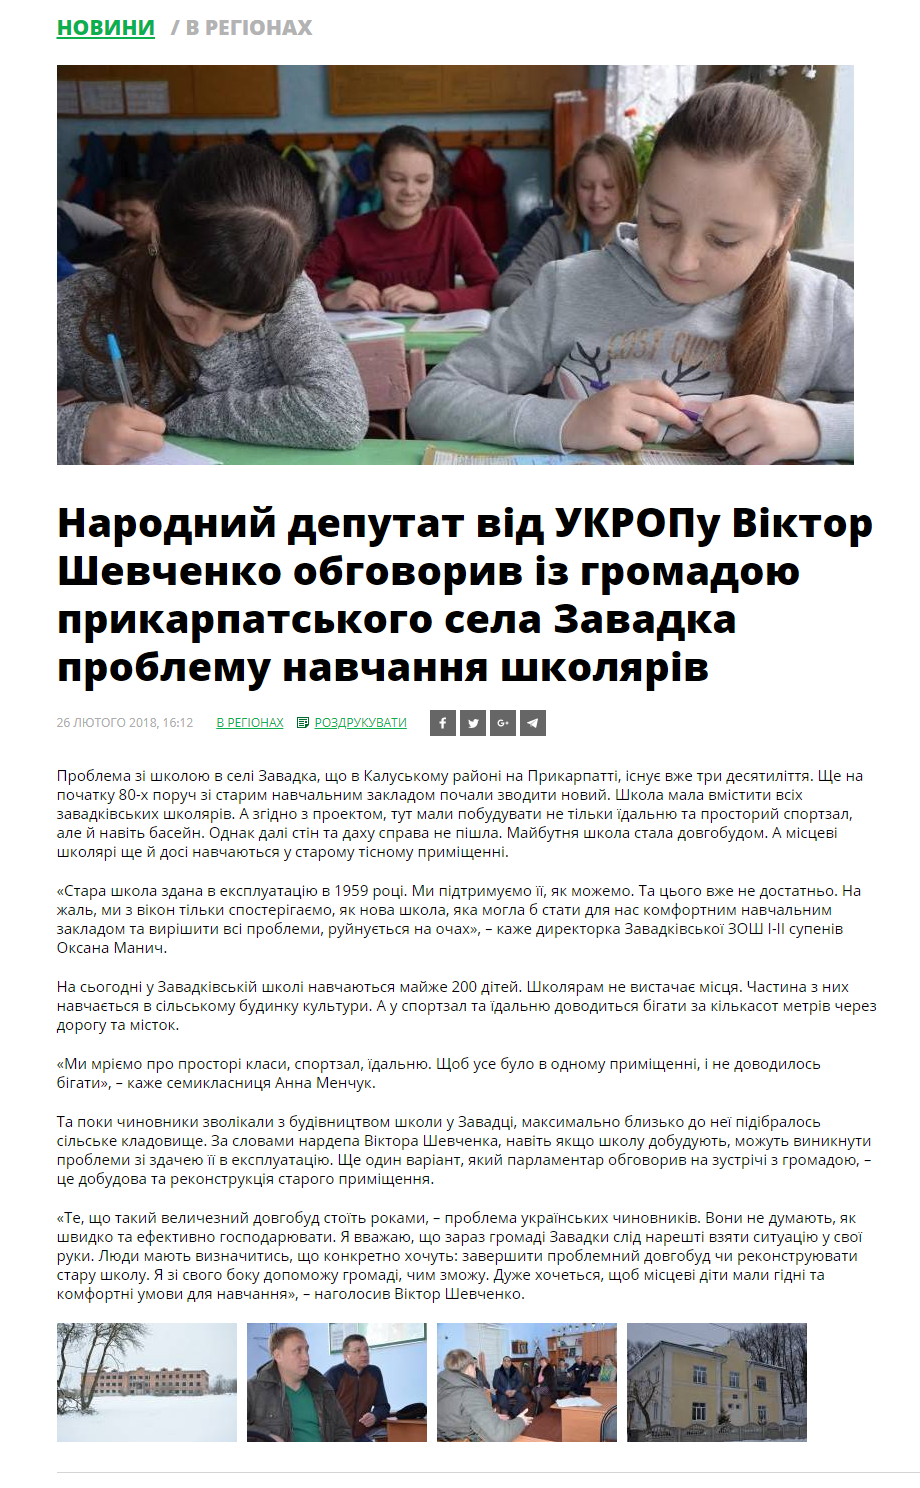 http://www.ukrop.com.ua/uk/news/regional/8698-narodniy-deputat-vid-ukropu-viktor-shevchenko-obgovoriv-iz-gromadoyu-prikarpatskogo-sela-zavadka-problemu-navchannya-shkolyariv